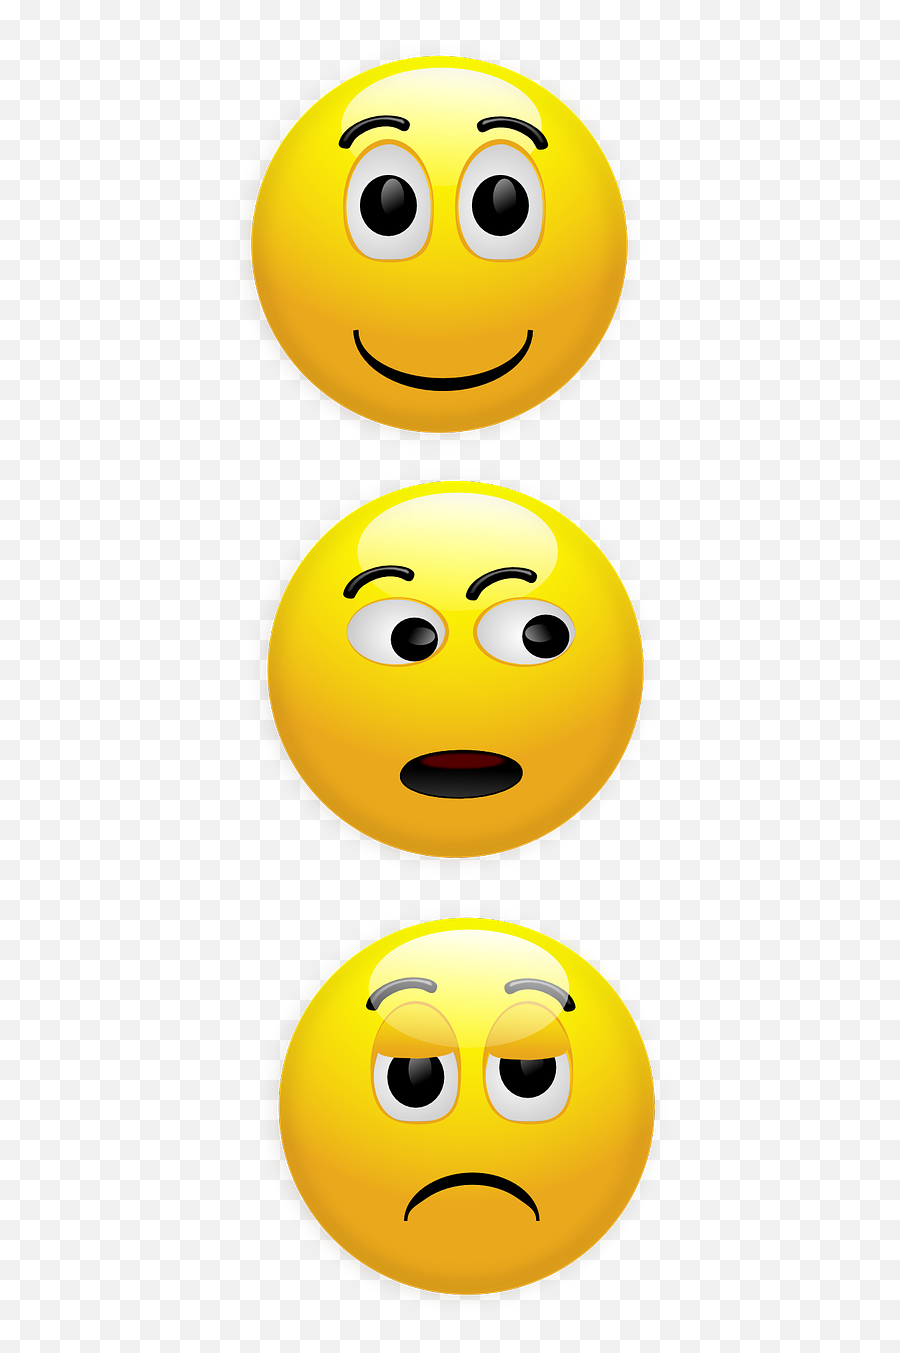 Download Free Photo Of Smileyhappyunhappywondering - Emoticon Emoji,Unhappy Emoji